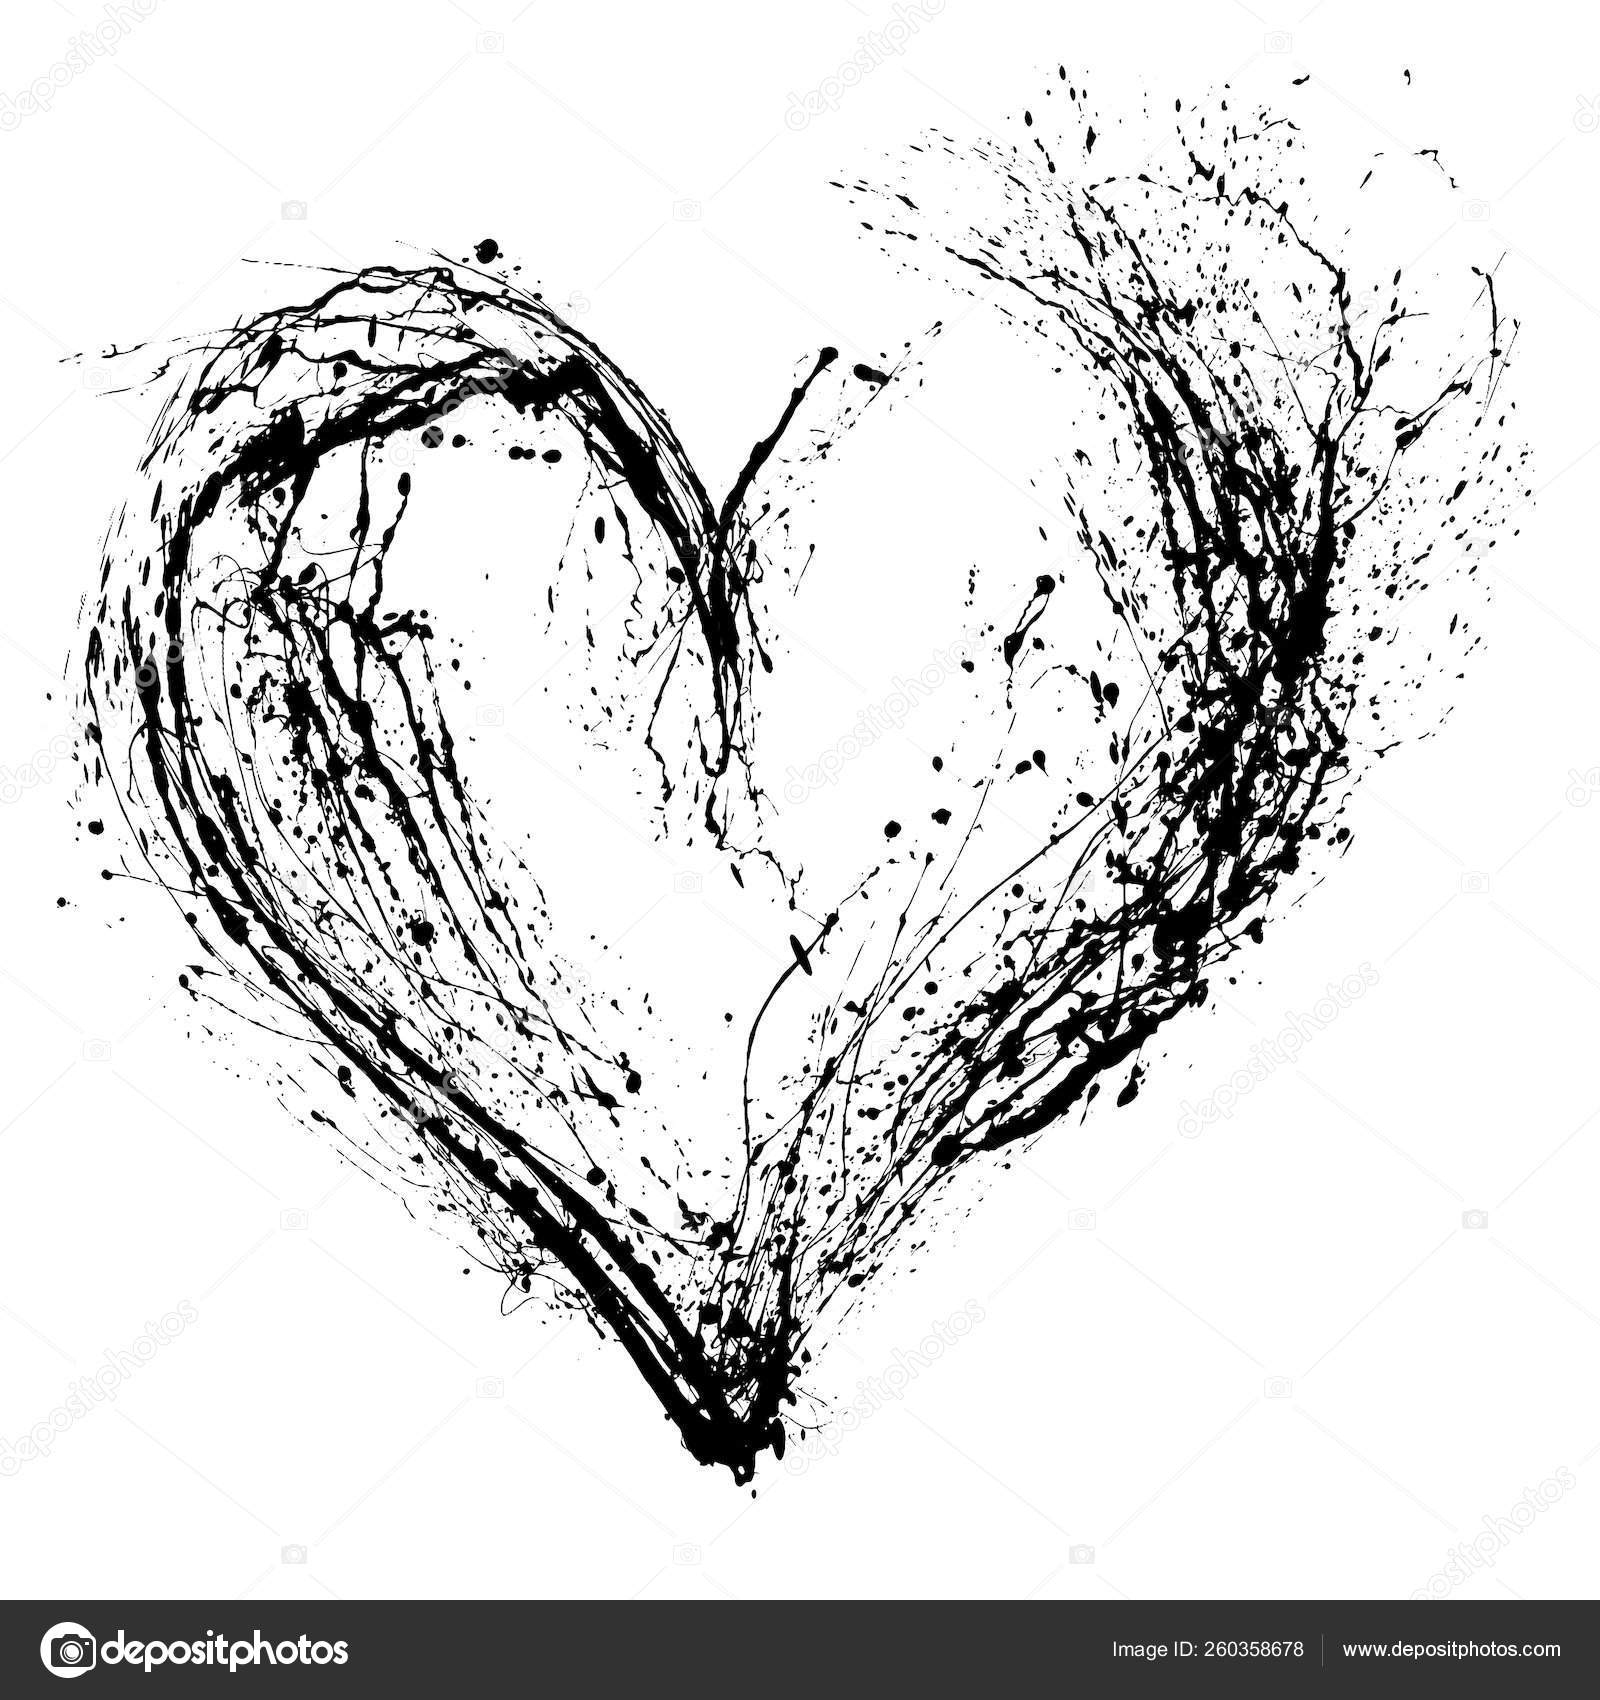 Hình nền trắng đen trái tim: Hình nền trắng đen trái tim là cách hoàn hảo để thể hiện tình yêu của bạn. Với sự tương phản nổi bật, hình nền này sẽ làm nổi bật trái tim trong những bức ảnh của bạn.